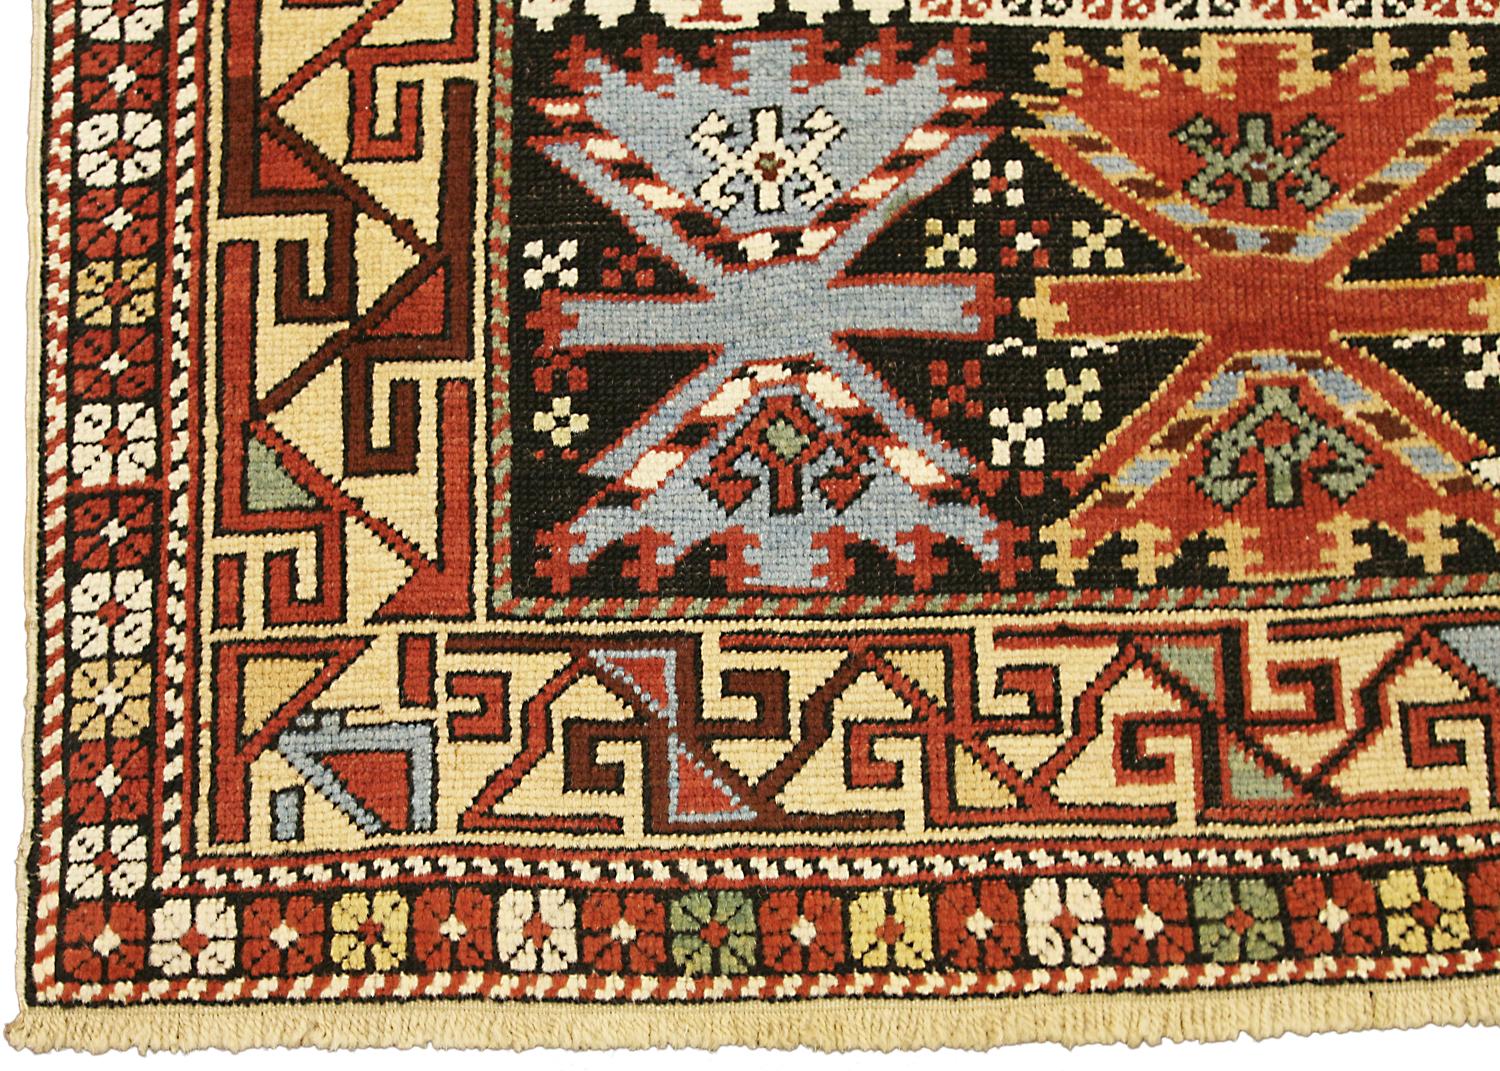 Il s'agit d'un ancien tapis Shirvan provenant de la partie sud des montagnes du Caucase et il a été tissé à la fin du XIXe siècle. Le champ de ce tapis est décoré de médaillons crochetés répétitifs et ses bordures jaunes et noires créent un